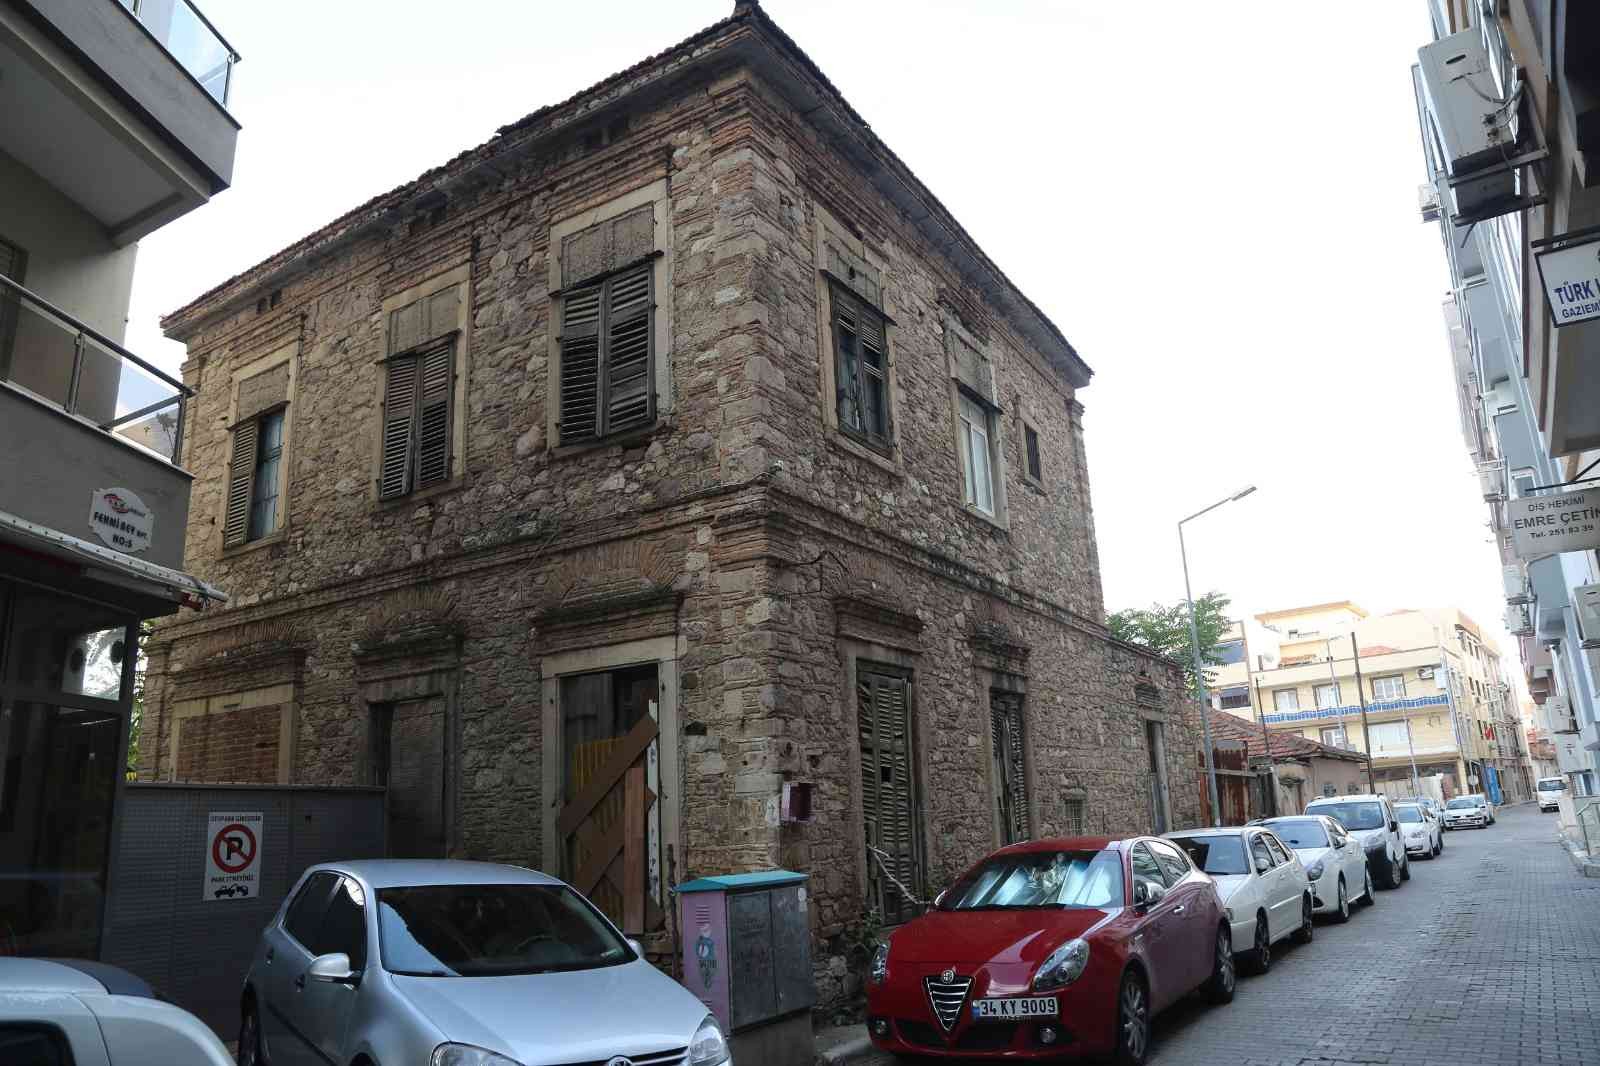 Gaziemir’in en eski yapısı valilik-belediye iş birliğinde yenilenecek